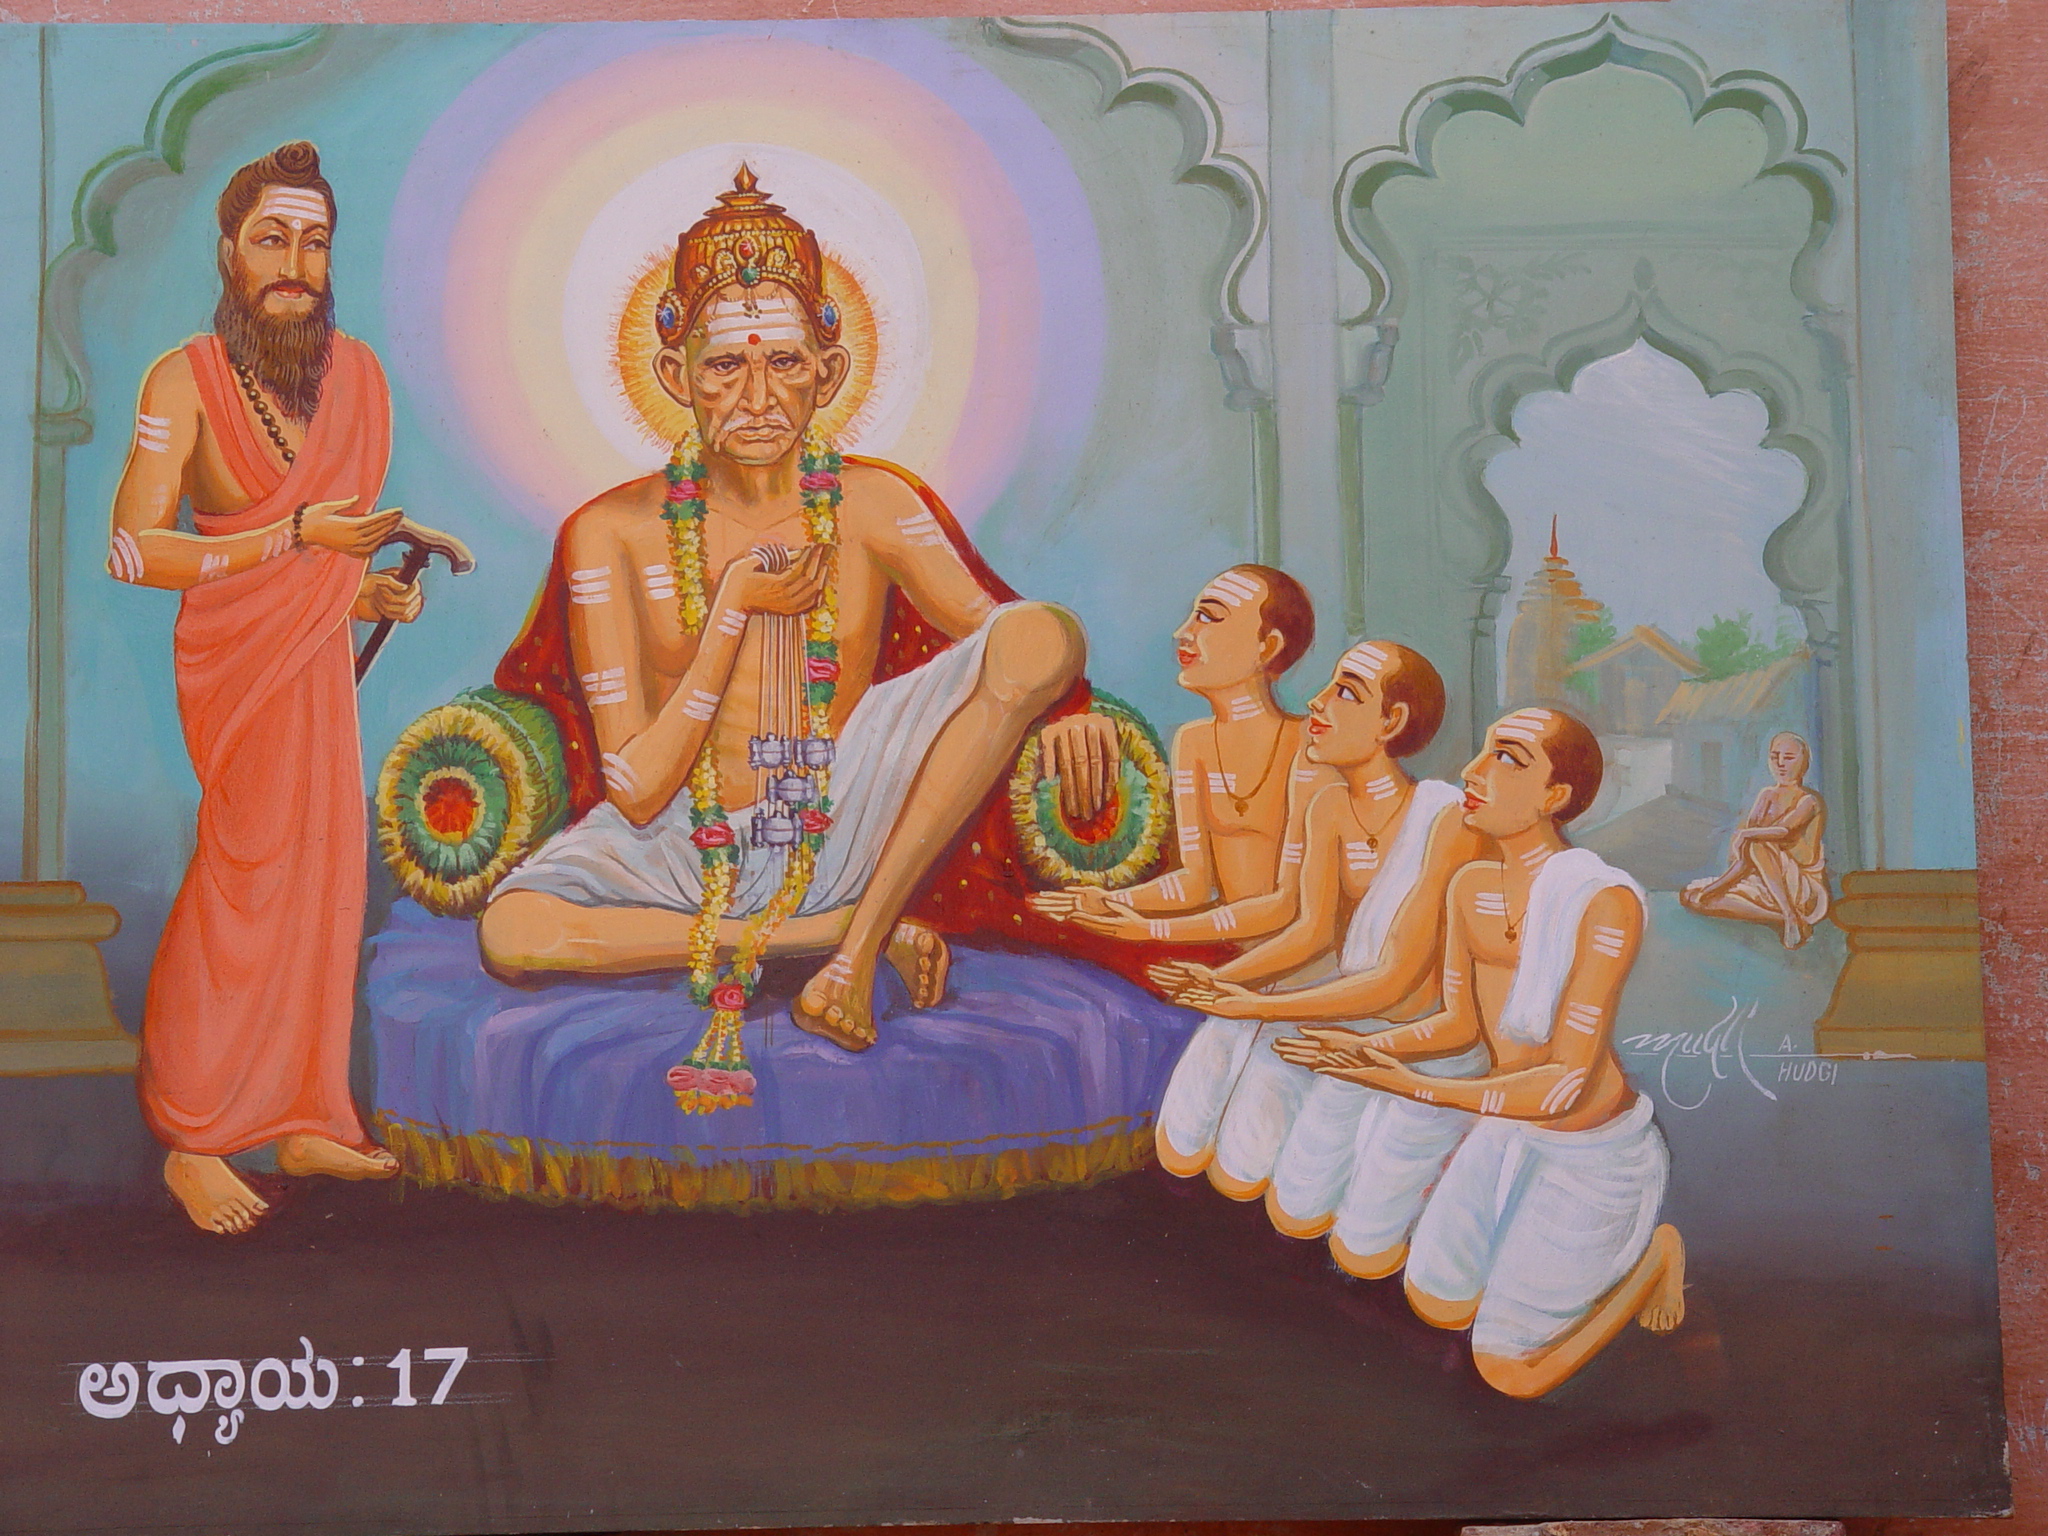         O Self-luminous, O Sad-Guru. O Siddharudha      